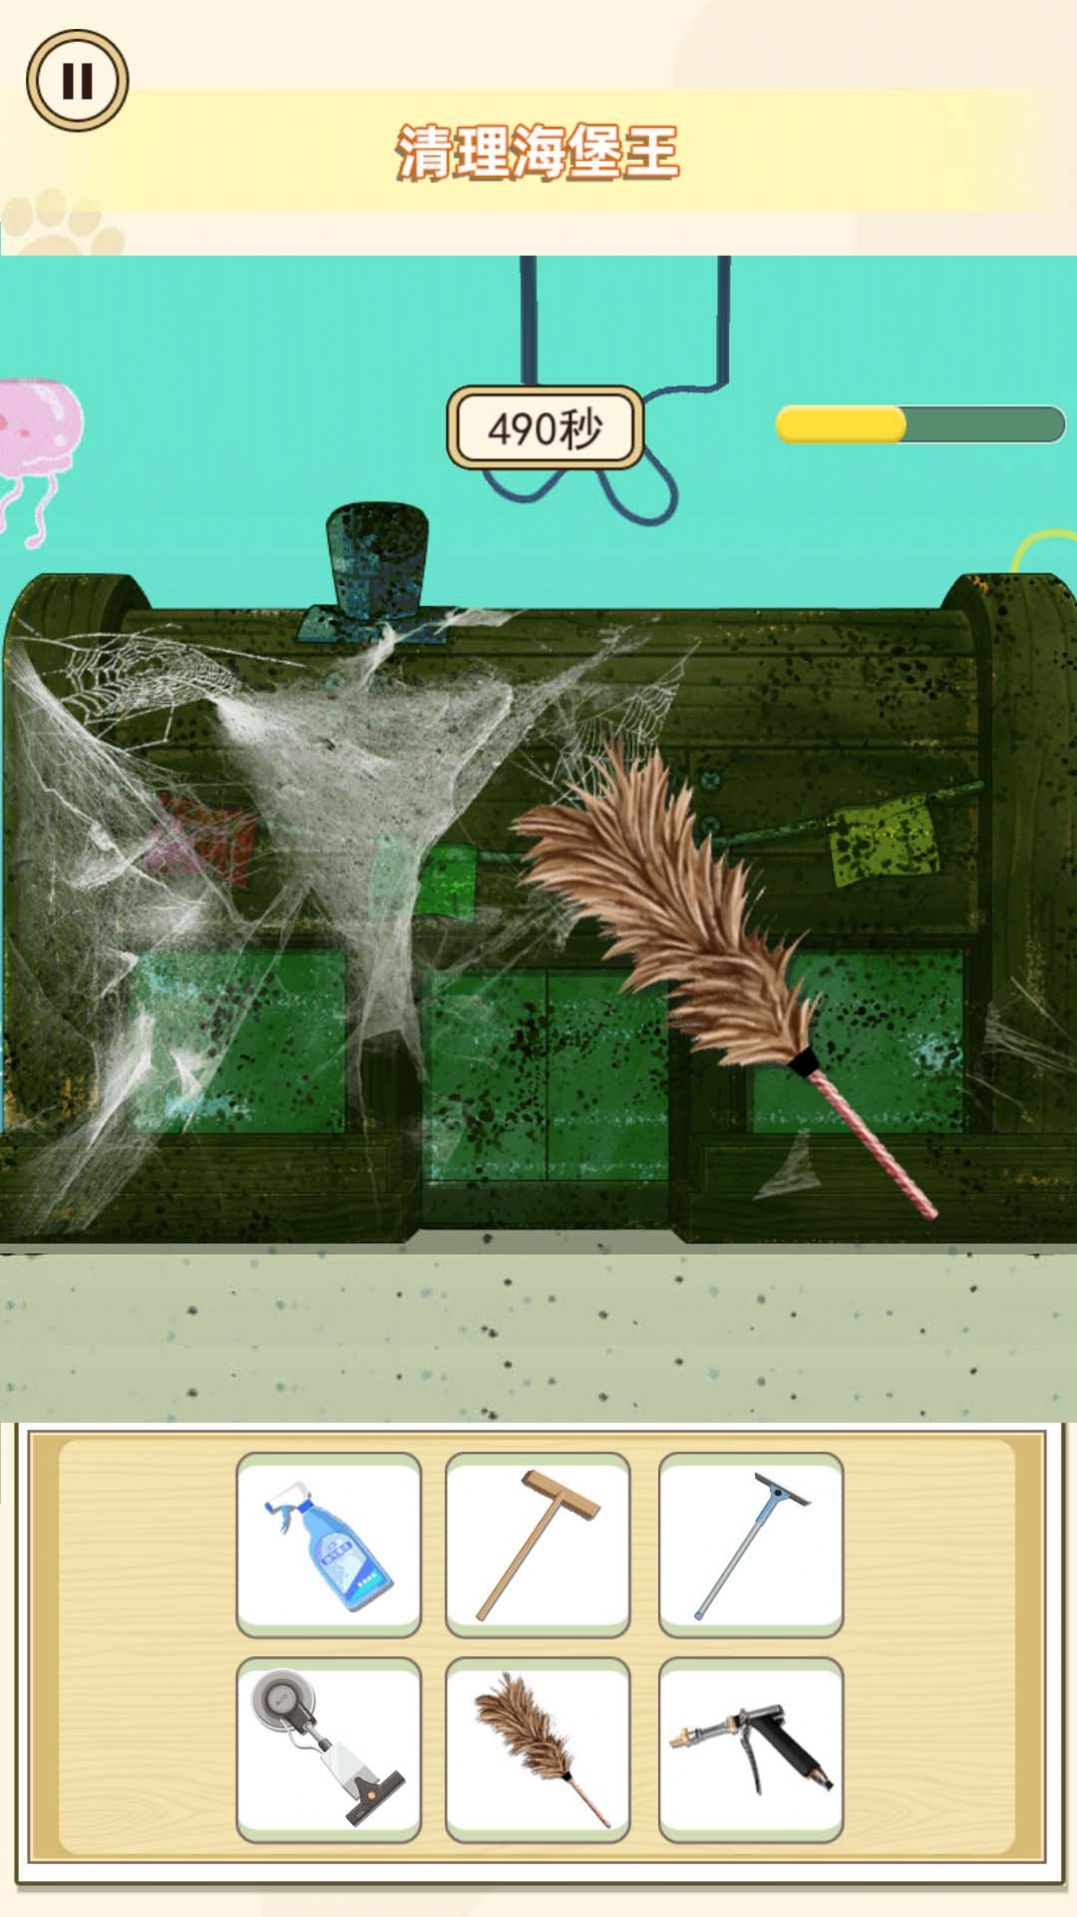 菠萝堡清洁工游戏下载正式版图片1